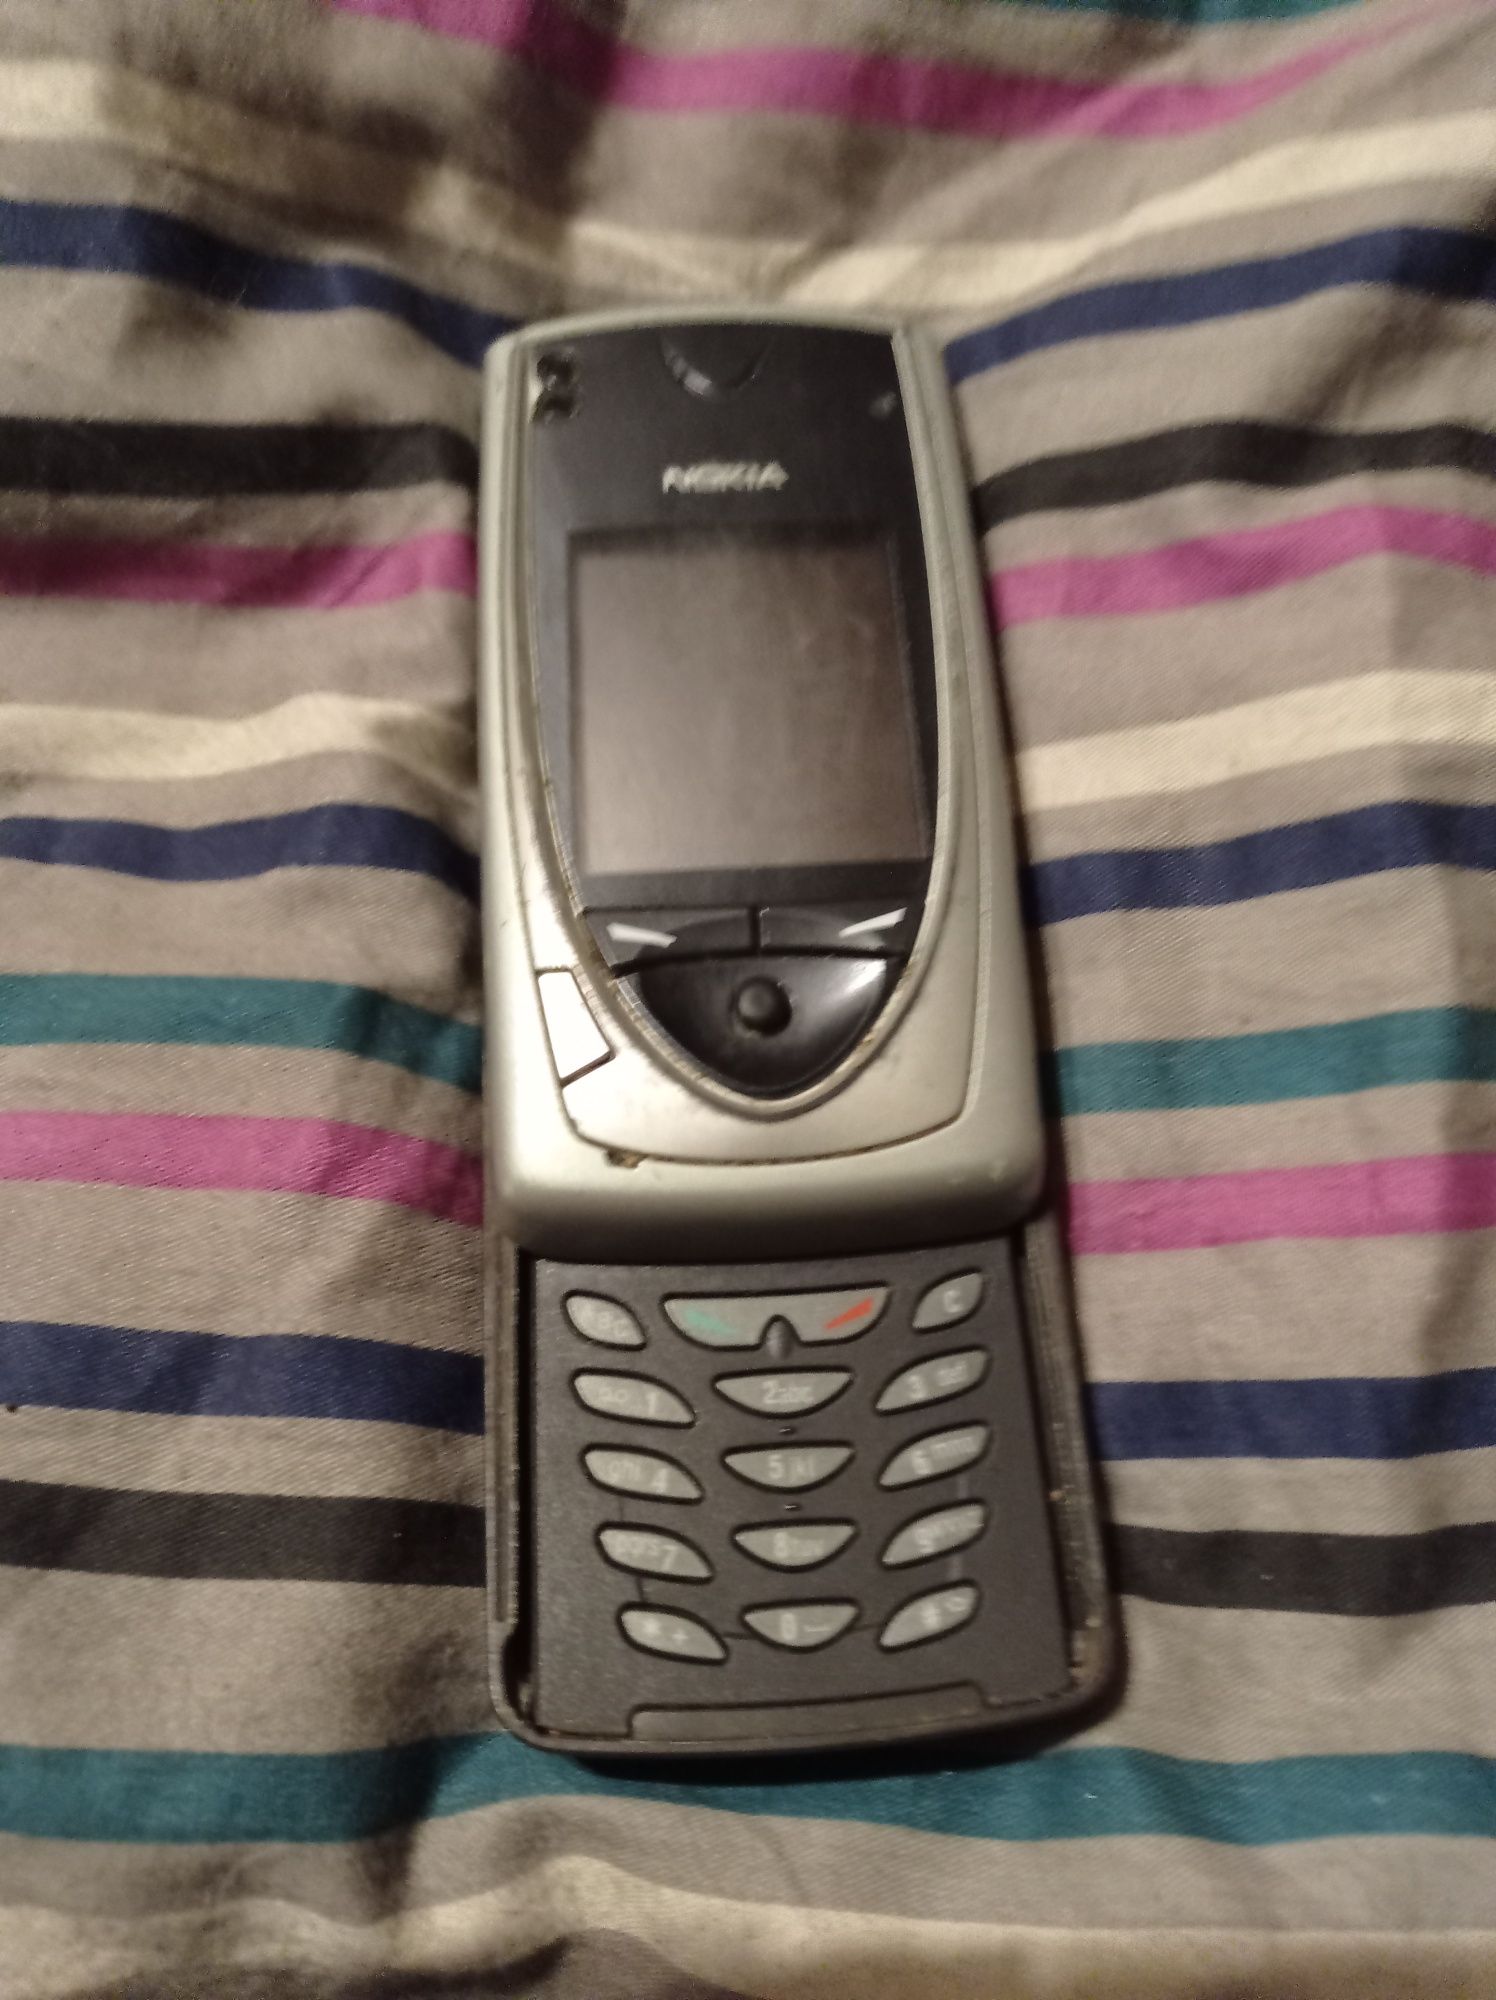 Telefon komórkowy Nokia 7650 sprawny